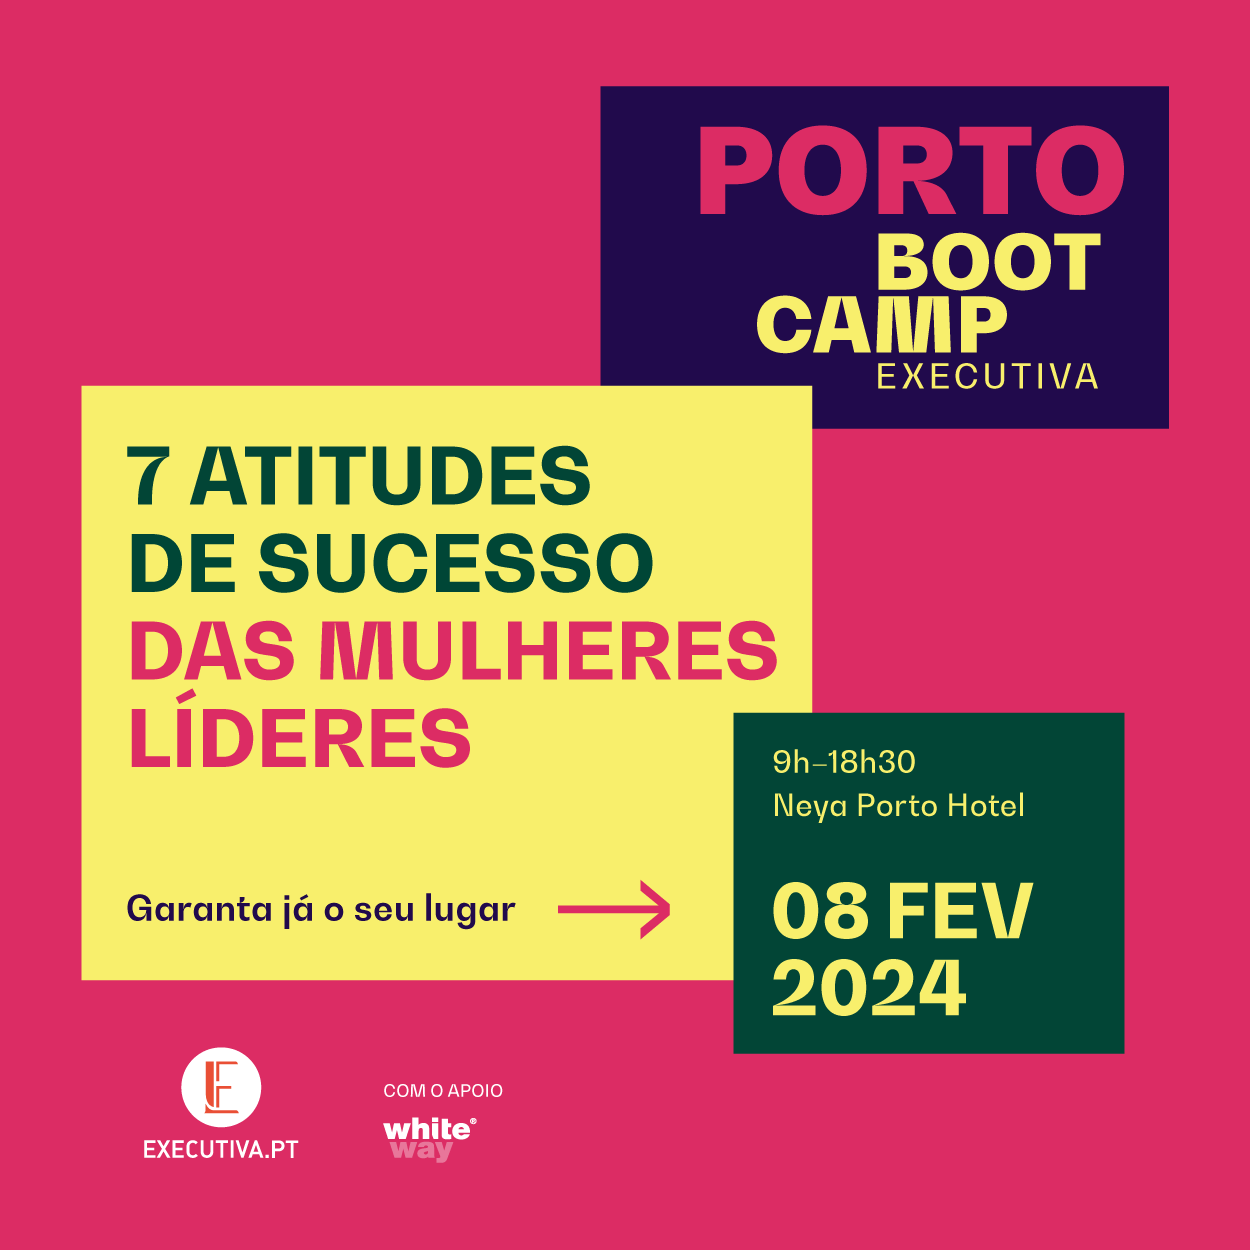 Bootcamp Executiva Porto: 7 attitudes do sucesso das mulheres líderes